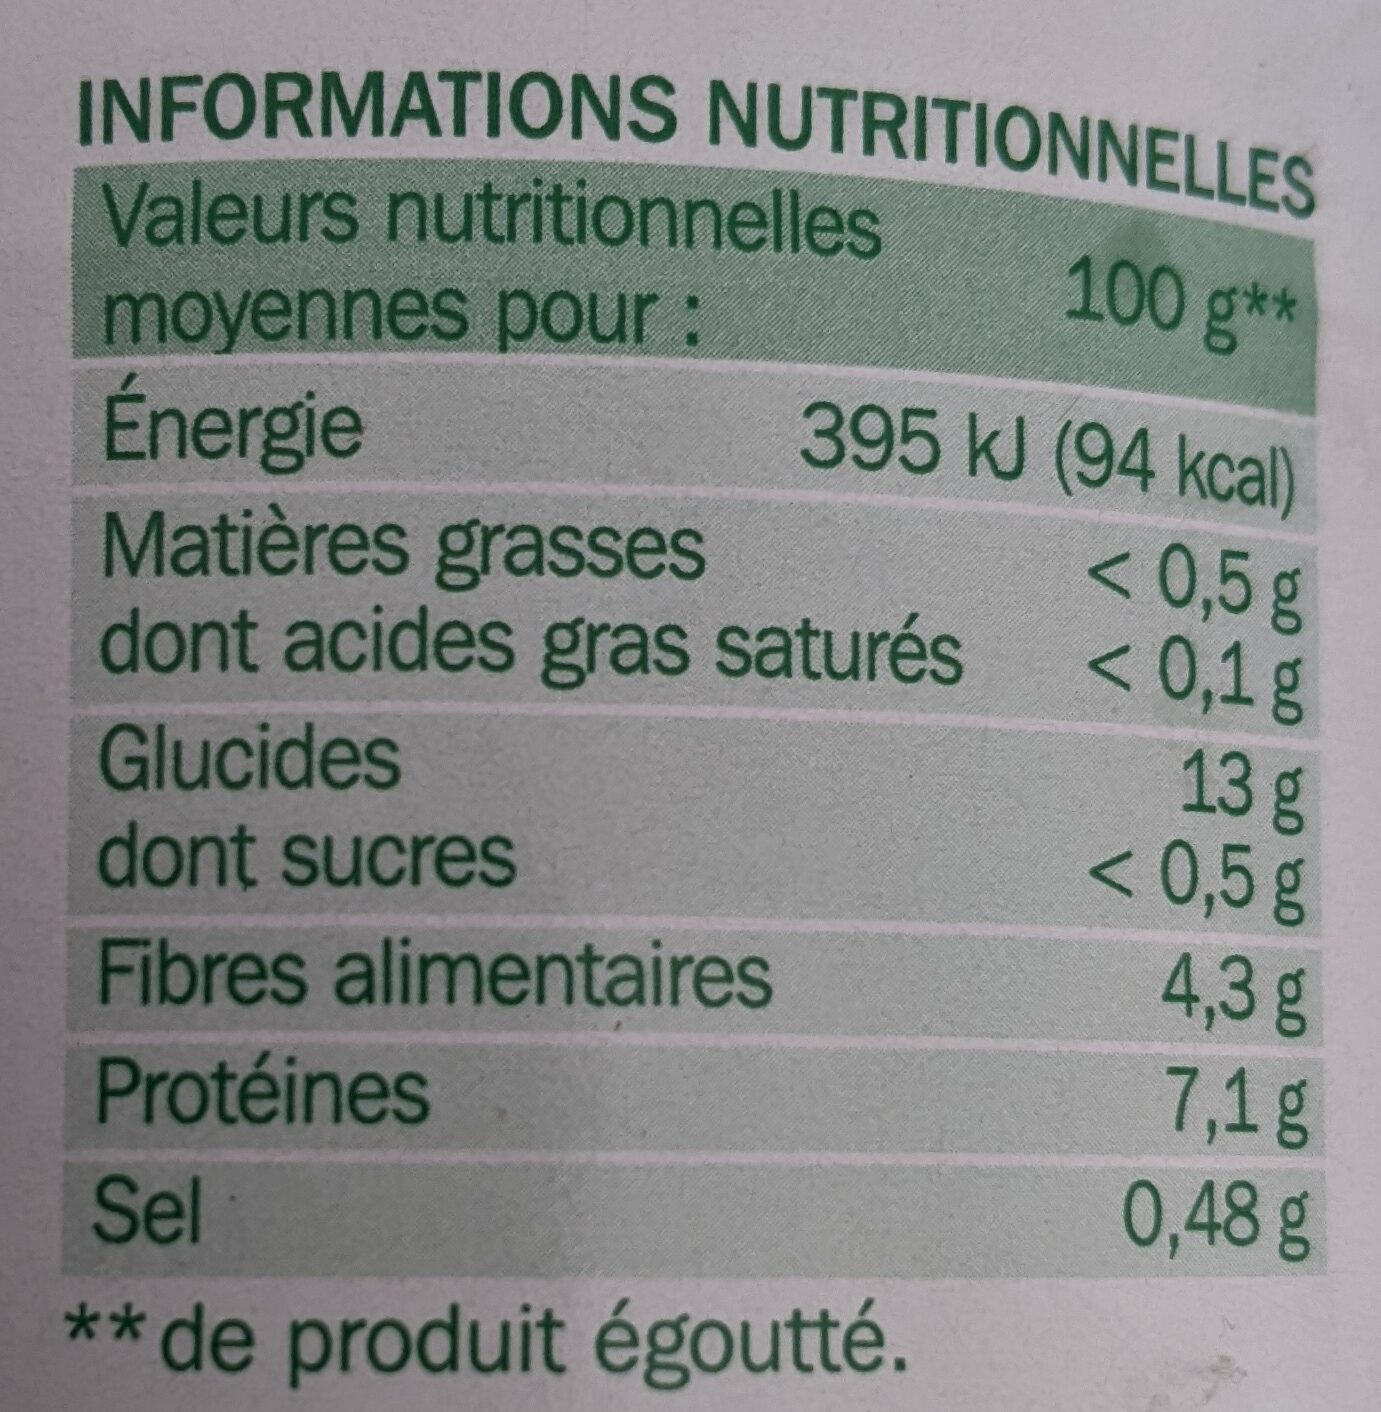 Lentilles - Tableau nutritionnel